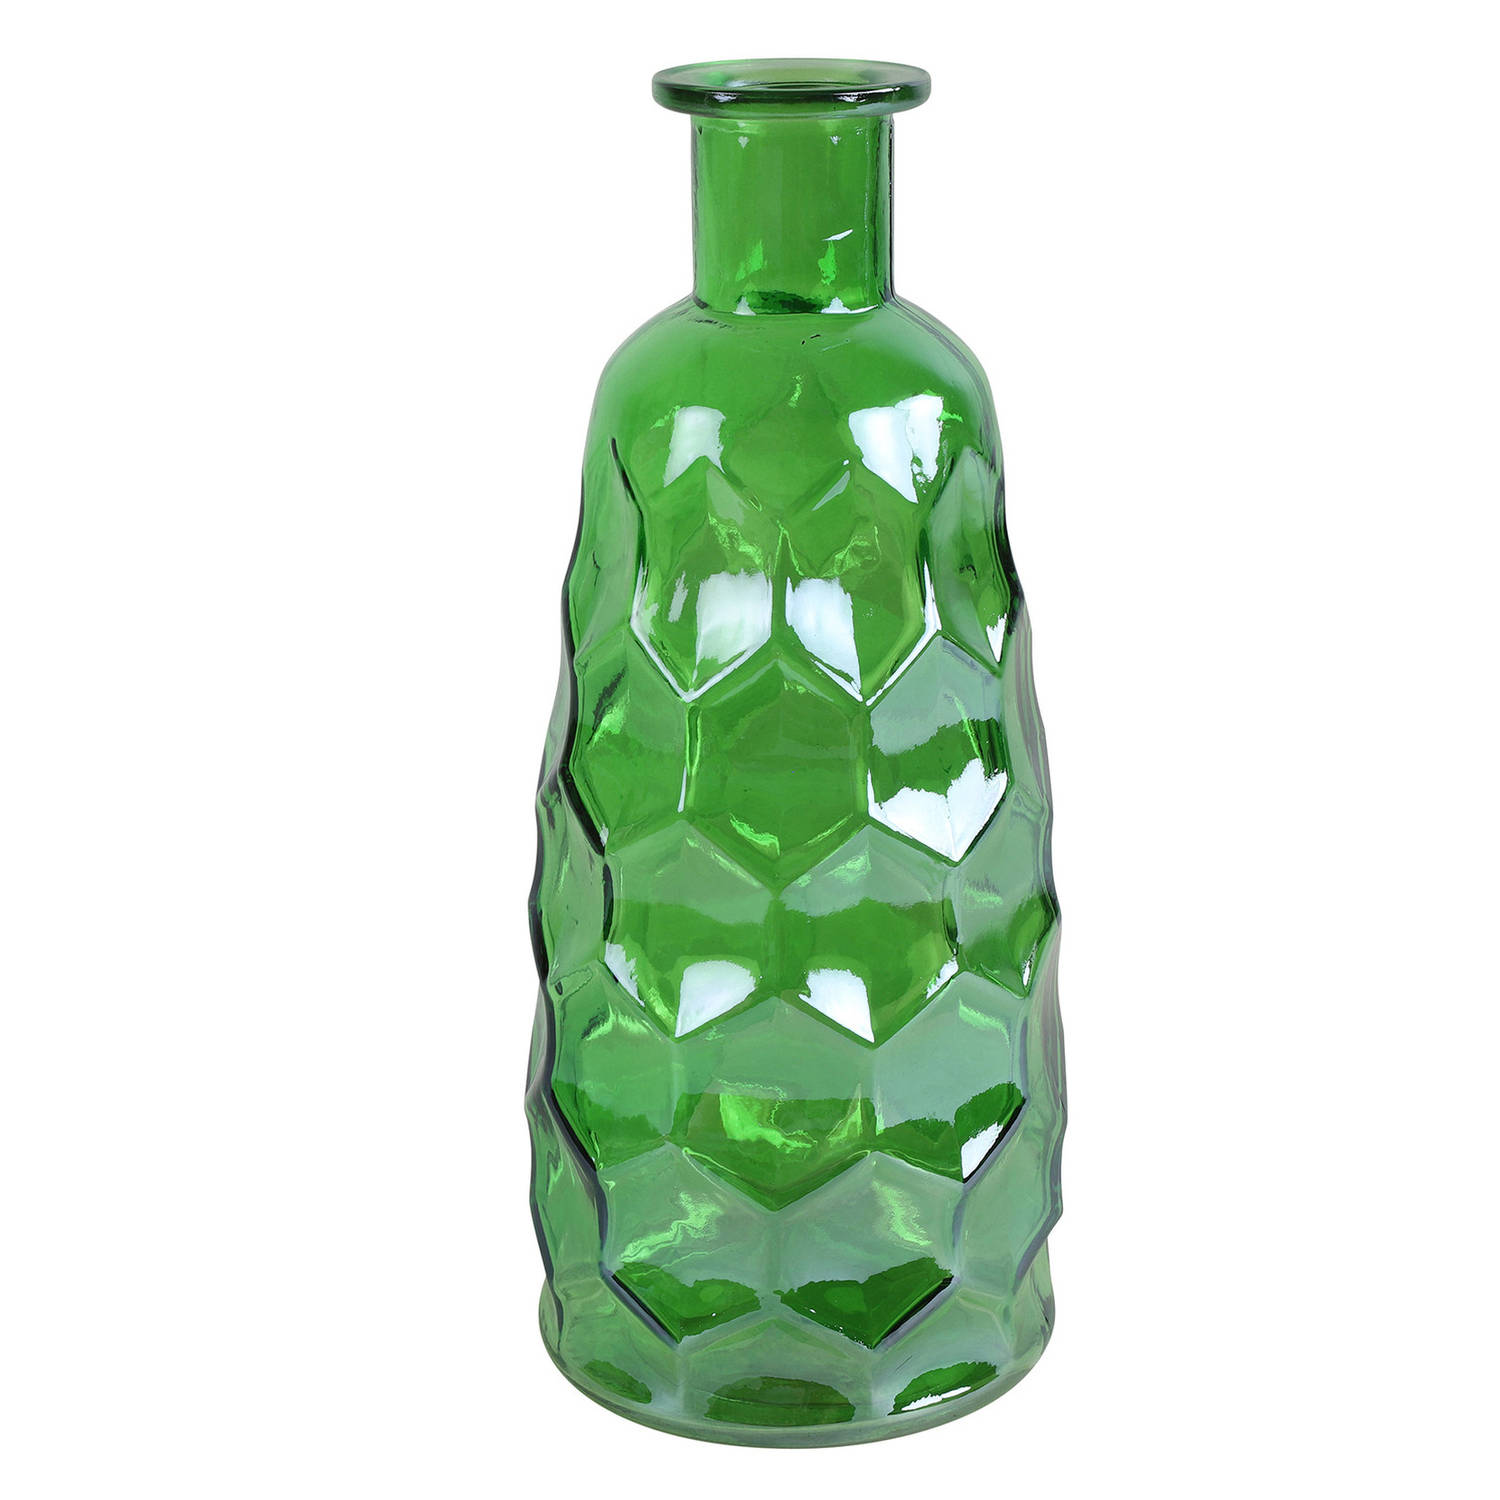 Countryfield Art Deco Bloemenvaas Groen Transparant Glas Fles Vorm D12 X H30 Cm Vazen